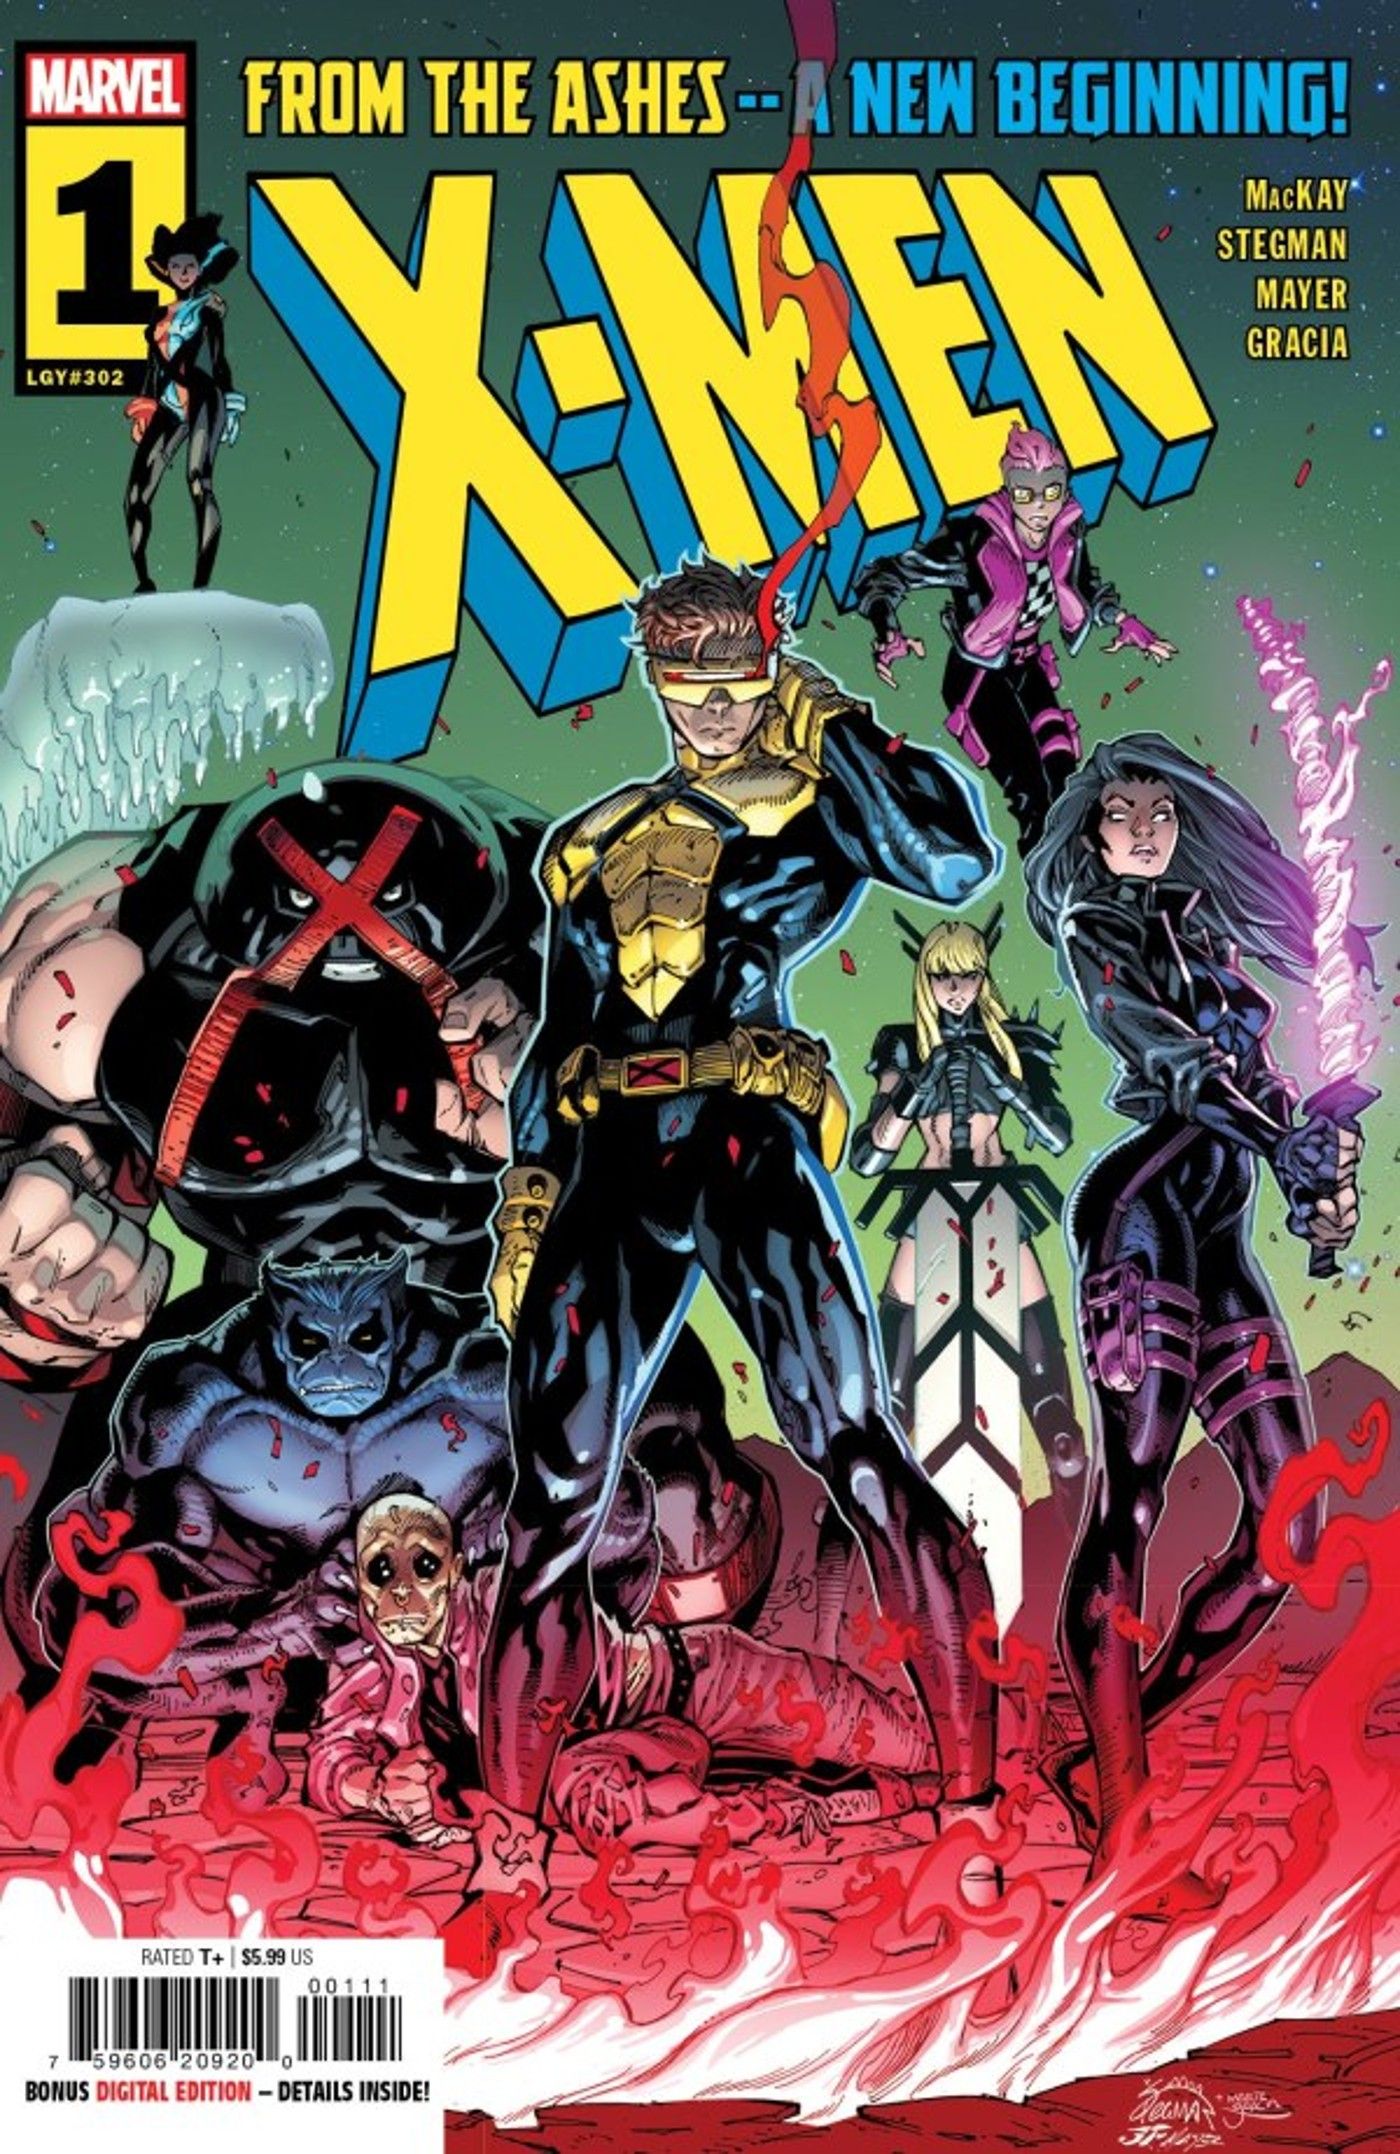 X-Men 1 capa nova da era das cinzas, mostrando ciclope com sua equipe incluindo fera